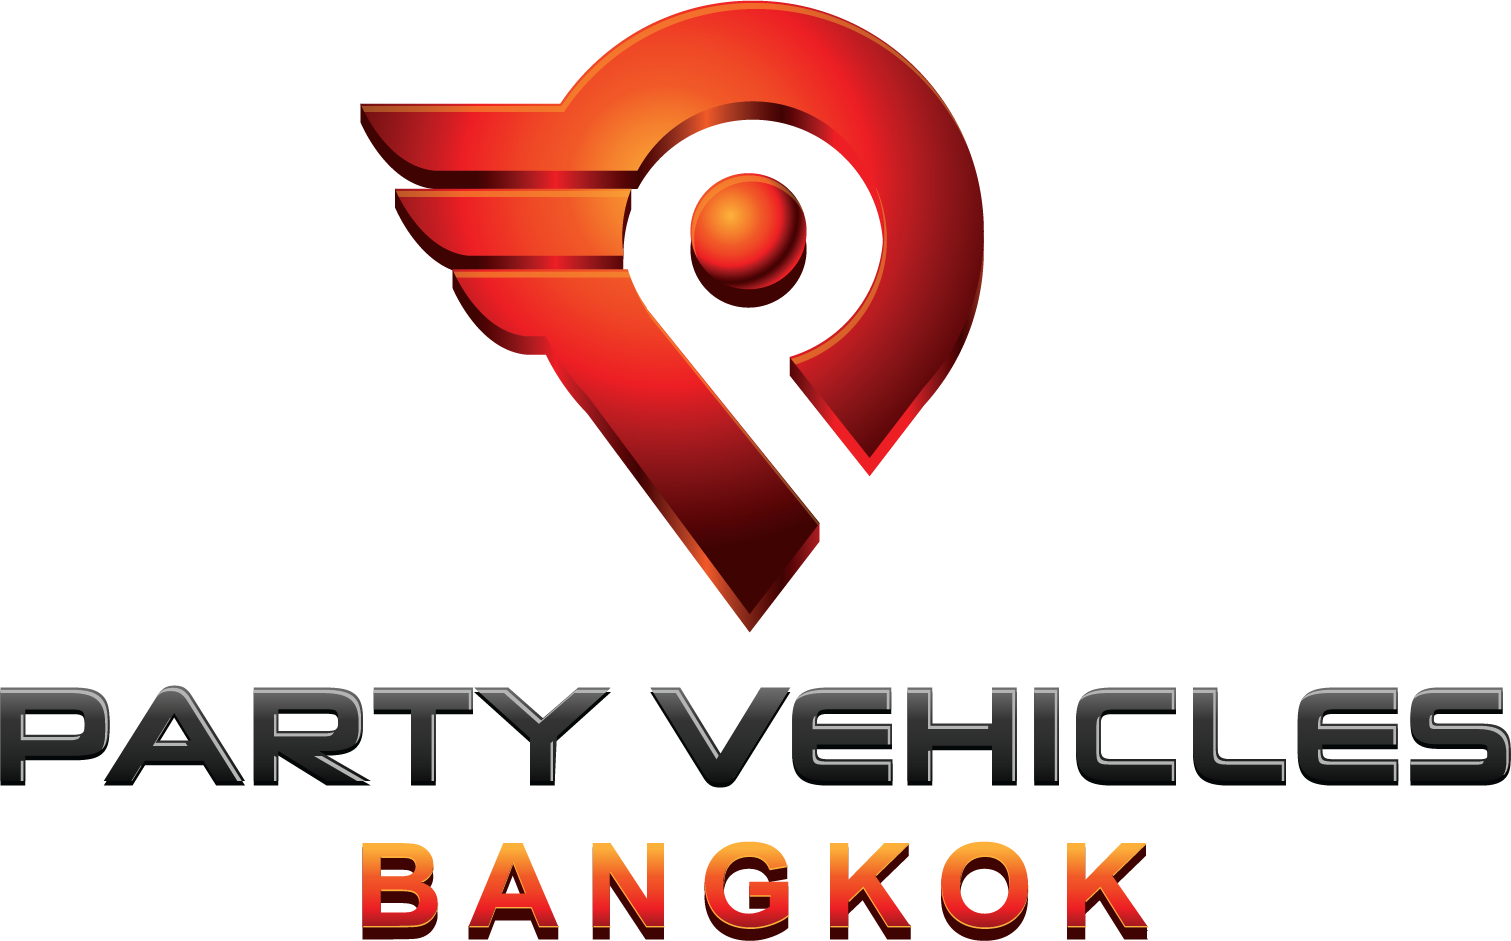 Party vehicles Bangkok